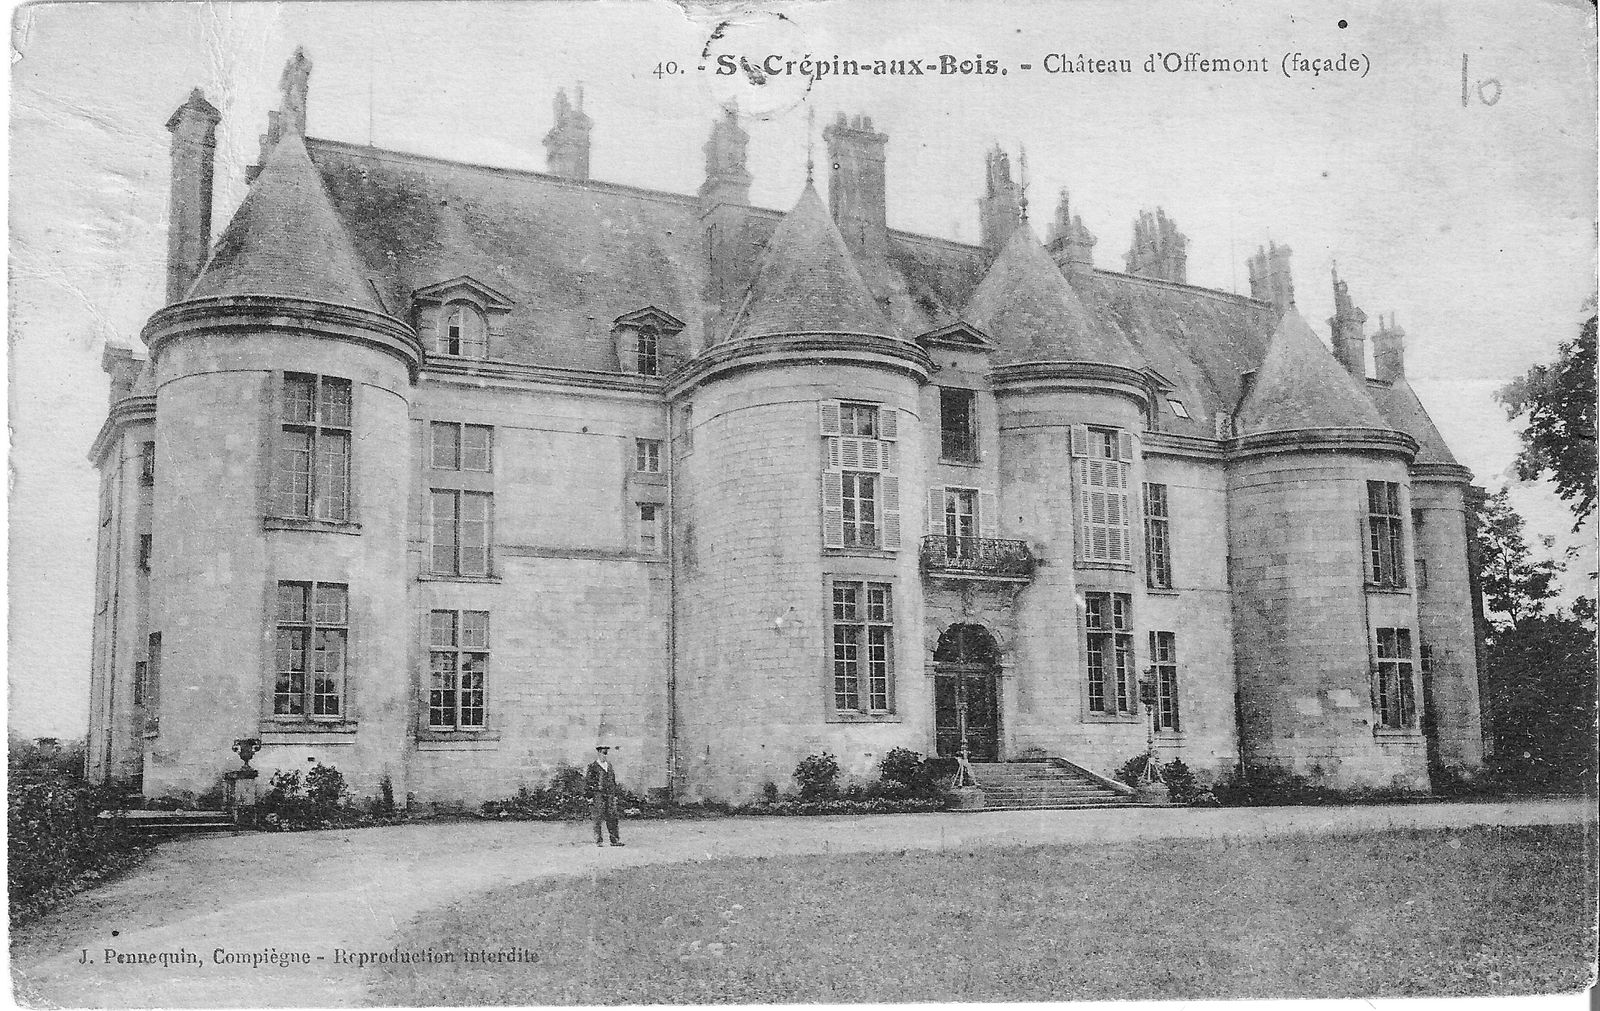 Album - le chateau d'Offemont (Oise)